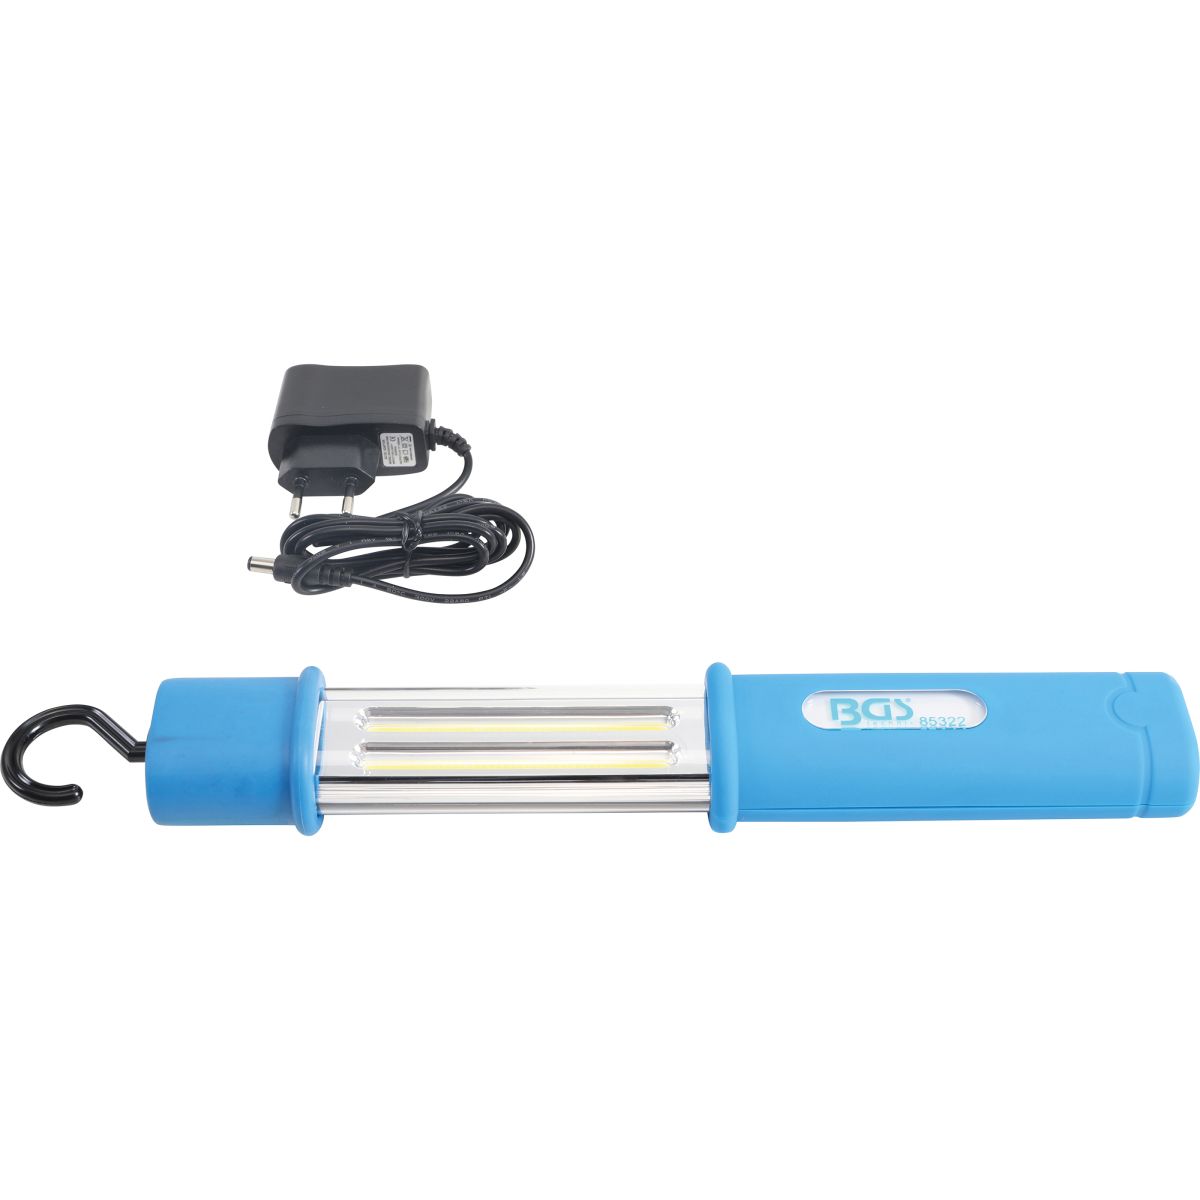 Cordless Handheld Lamp | COB-LED | waterproof | 5 W